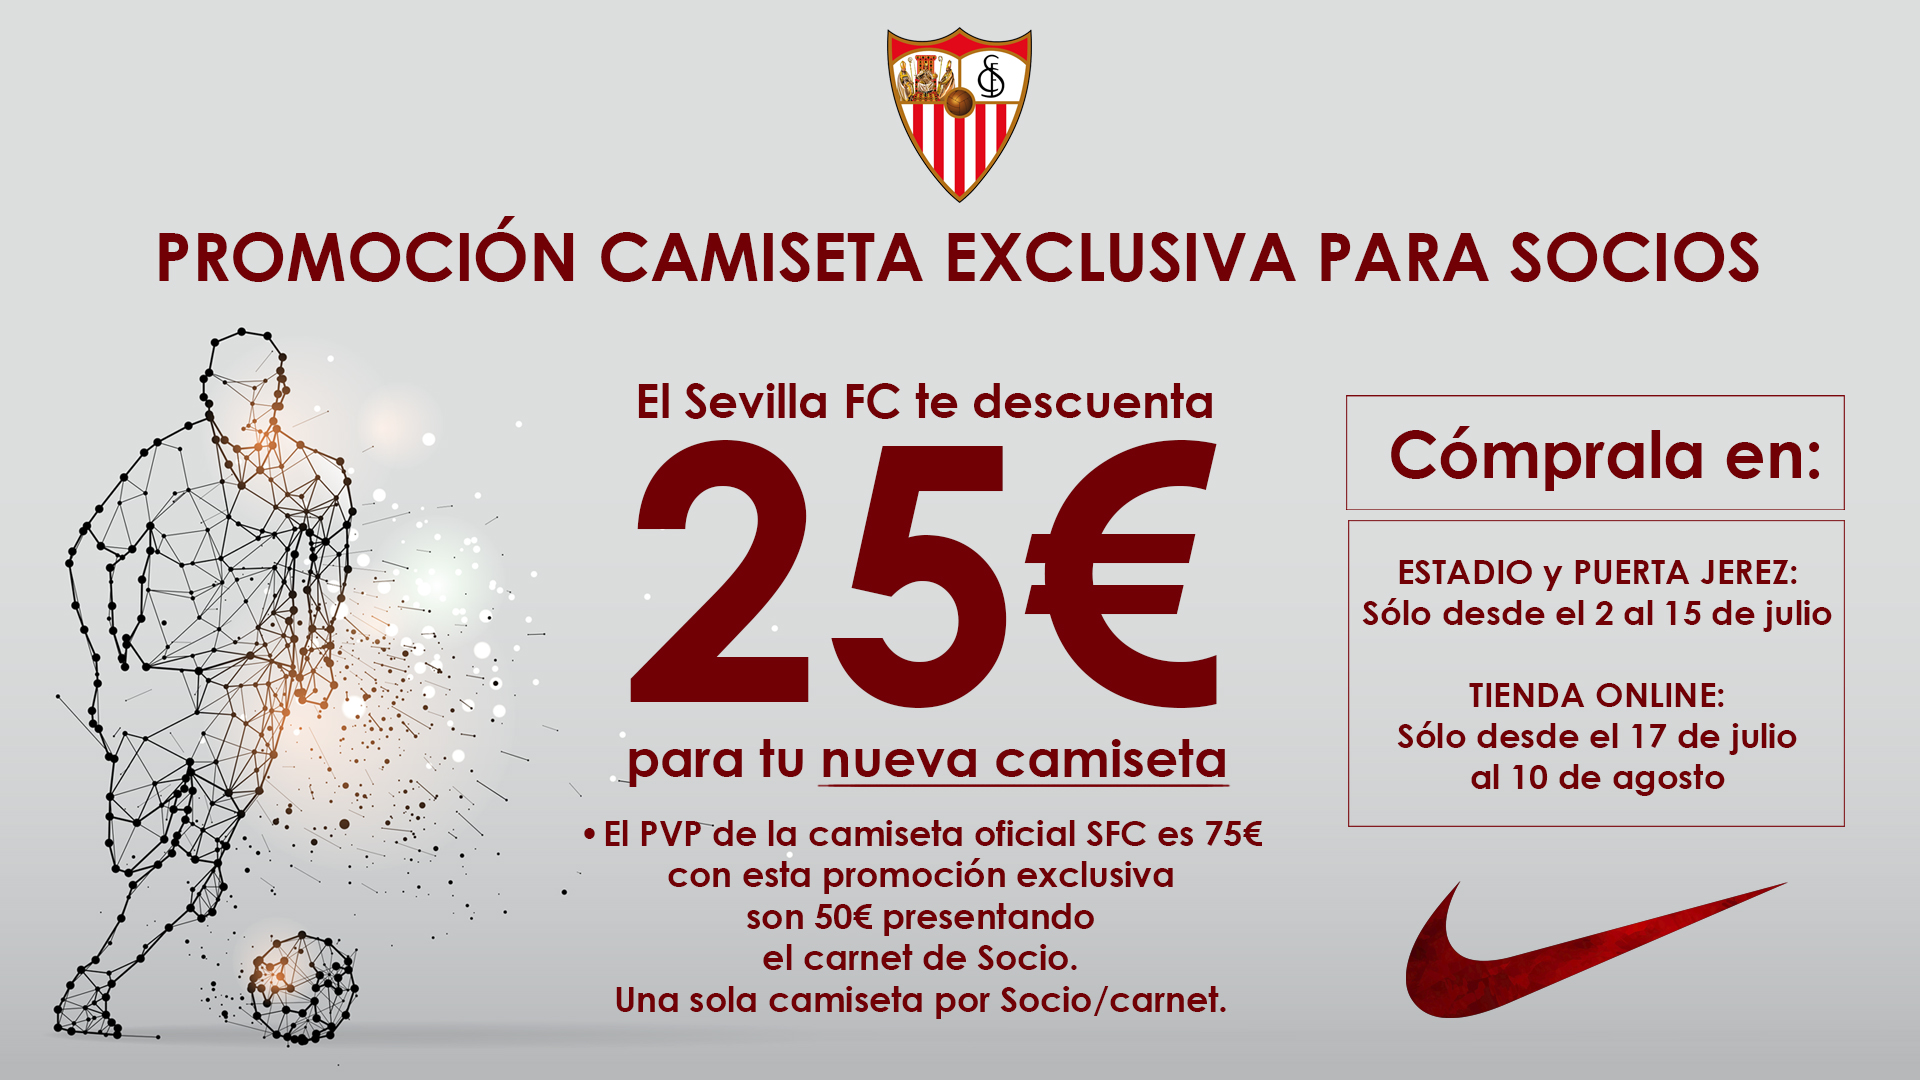 La nueva camiseta del Sevilla FC 2020, equipación Nike